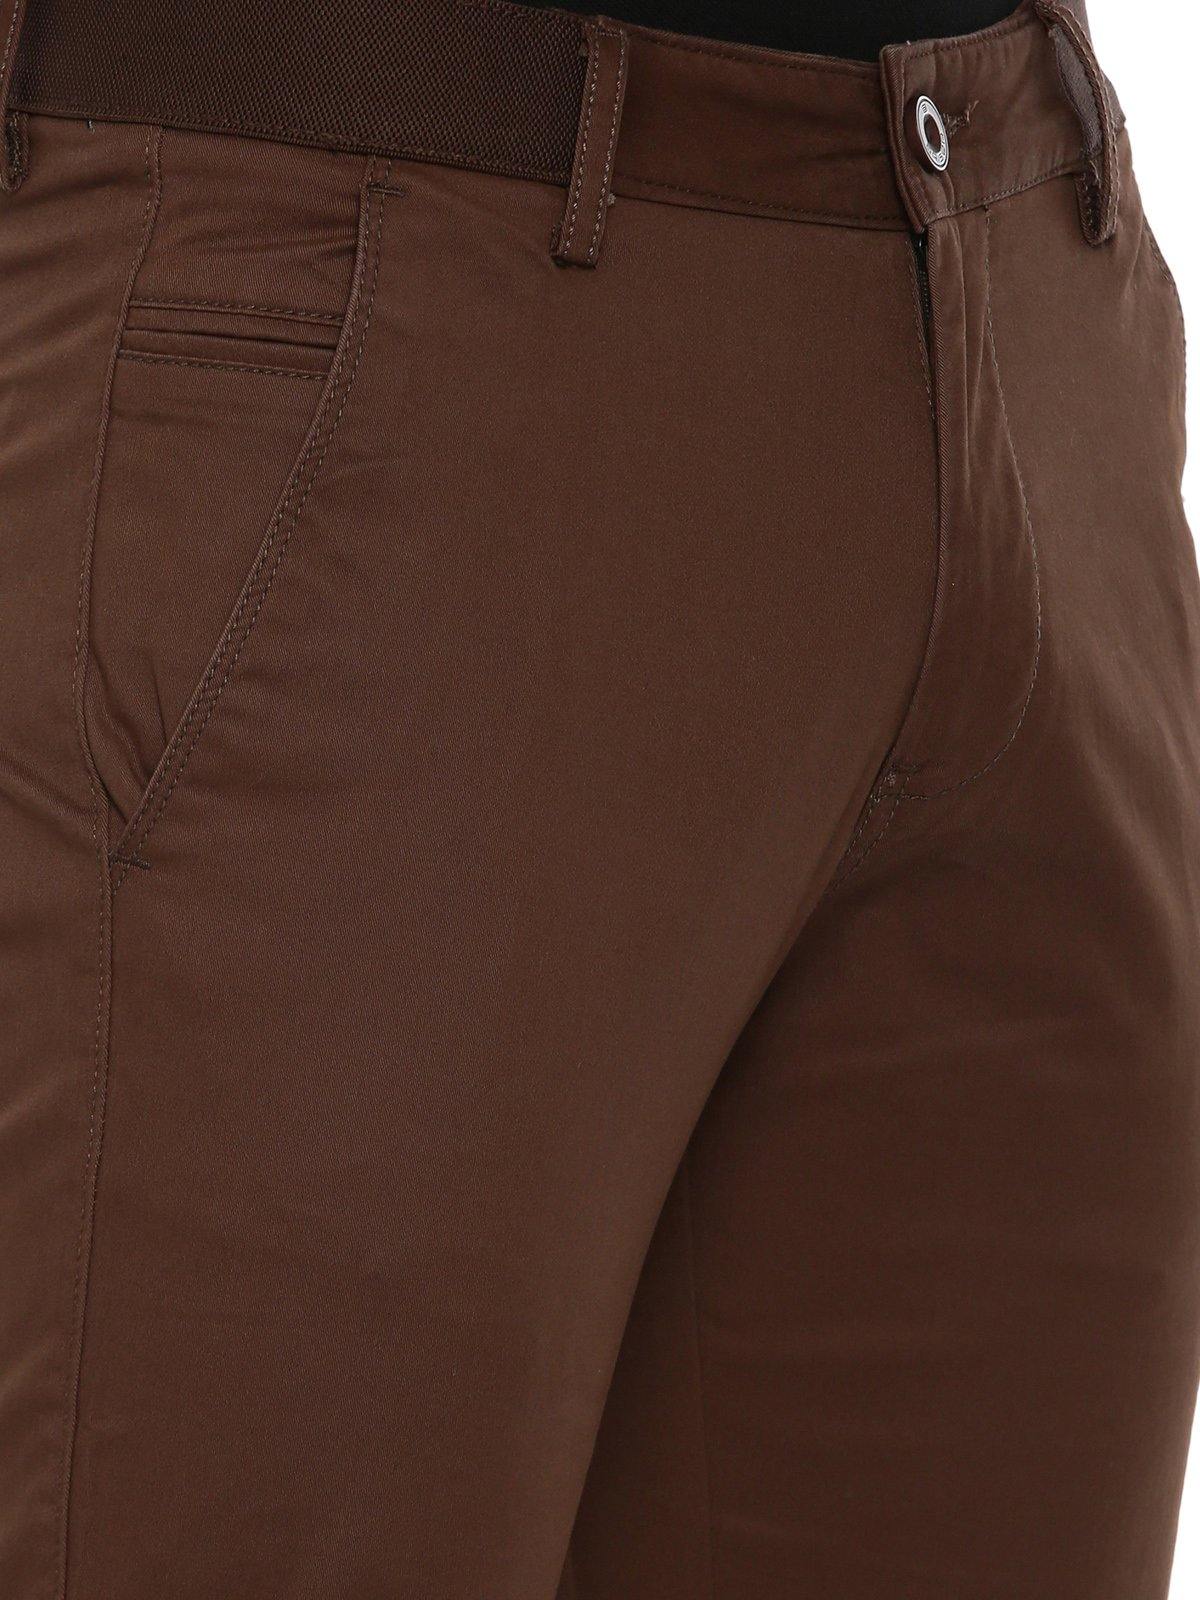 XL Brown Men's Formal Pant at Rs 550 in Bengaluru | ID: 14510484788